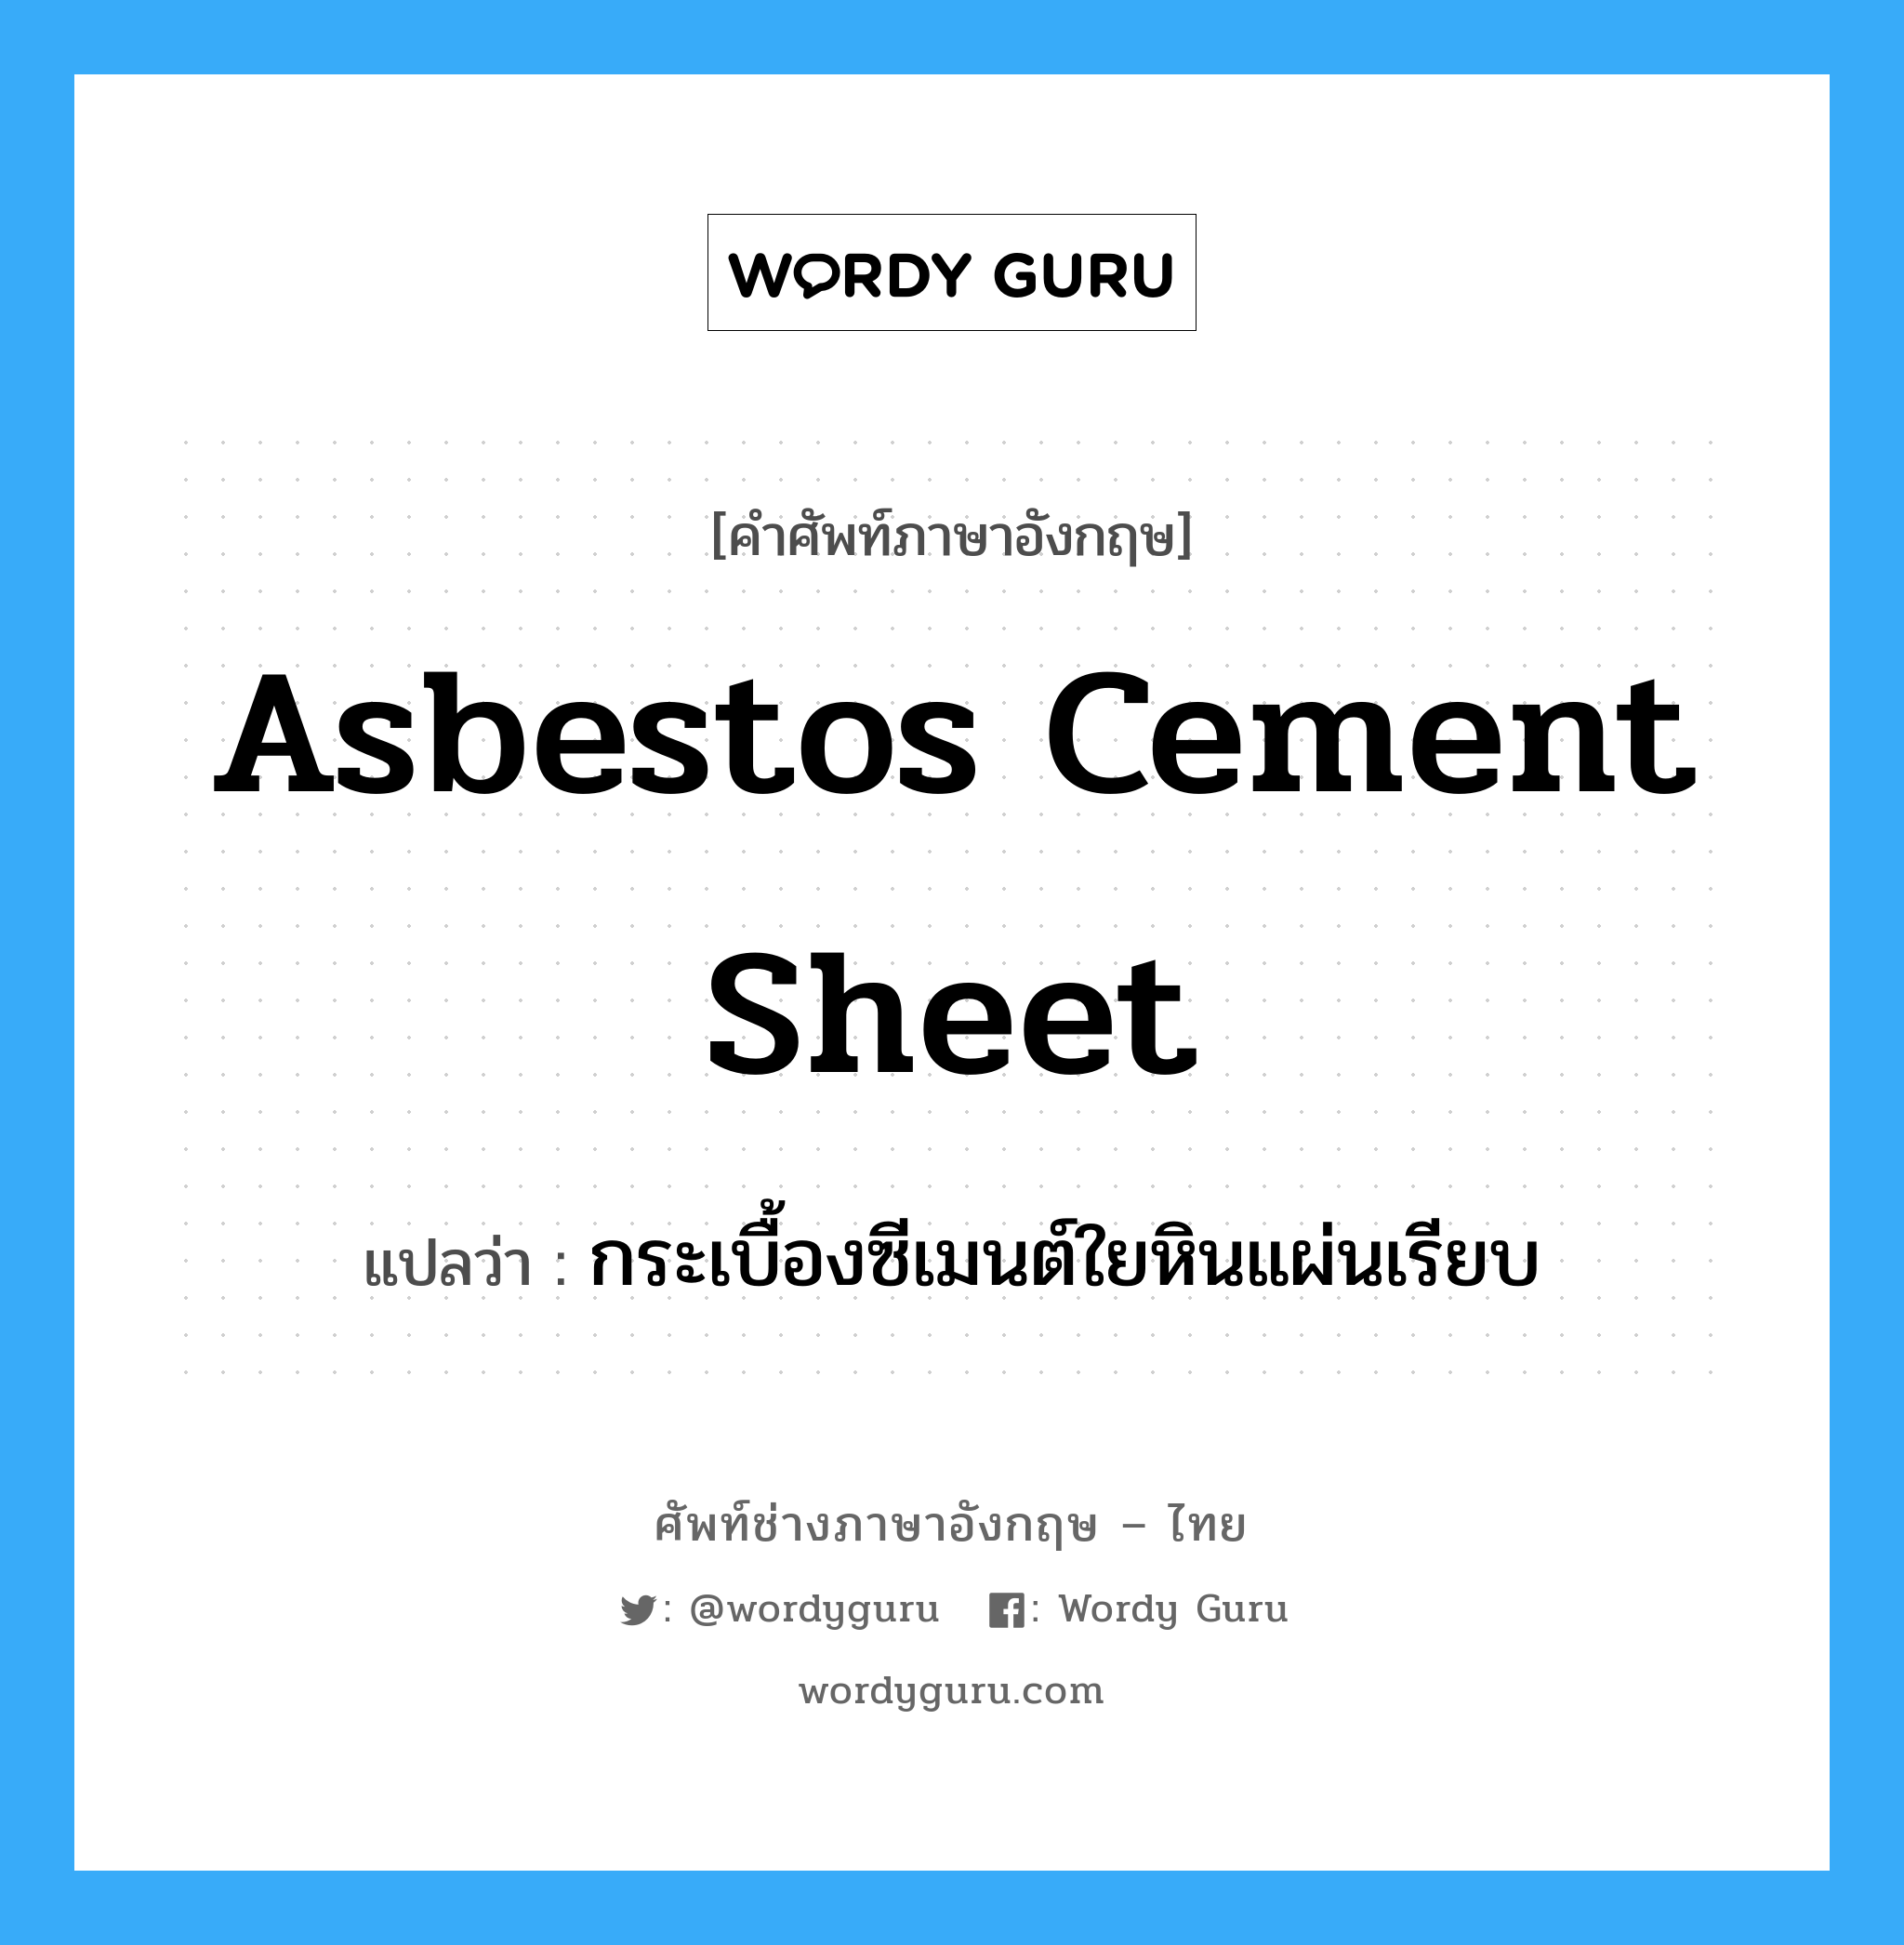 กระเบื้องซีเมนต์ใยหินแผ่นเรียบ ภาษาอังกฤษ?, คำศัพท์ช่างภาษาอังกฤษ - ไทย กระเบื้องซีเมนต์ใยหินแผ่นเรียบ คำศัพท์ภาษาอังกฤษ กระเบื้องซีเมนต์ใยหินแผ่นเรียบ แปลว่า asbestos cement sheet